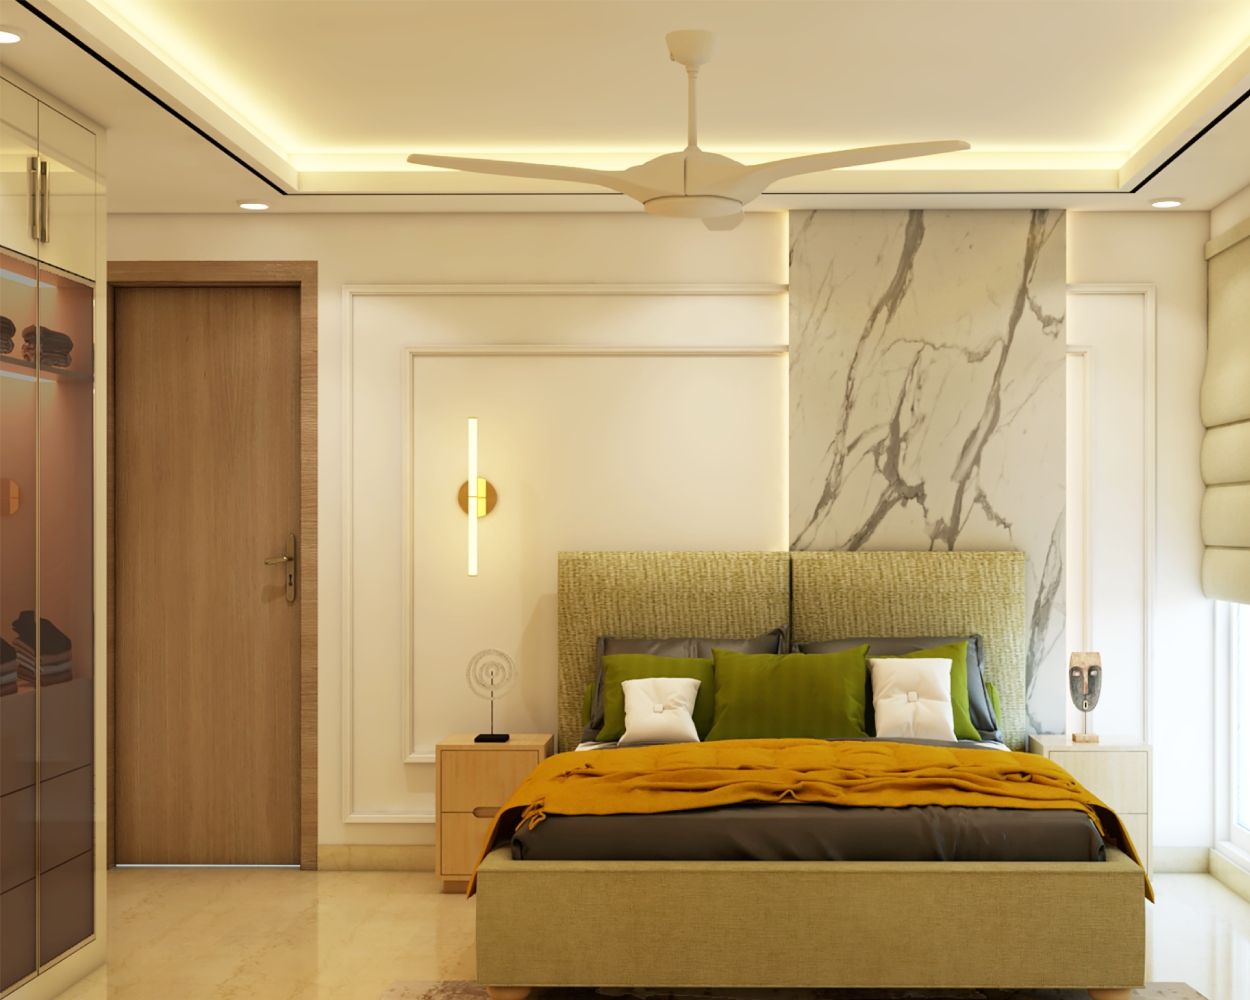 Contemporary Gypsum False Ceiling Design For Bedrooms